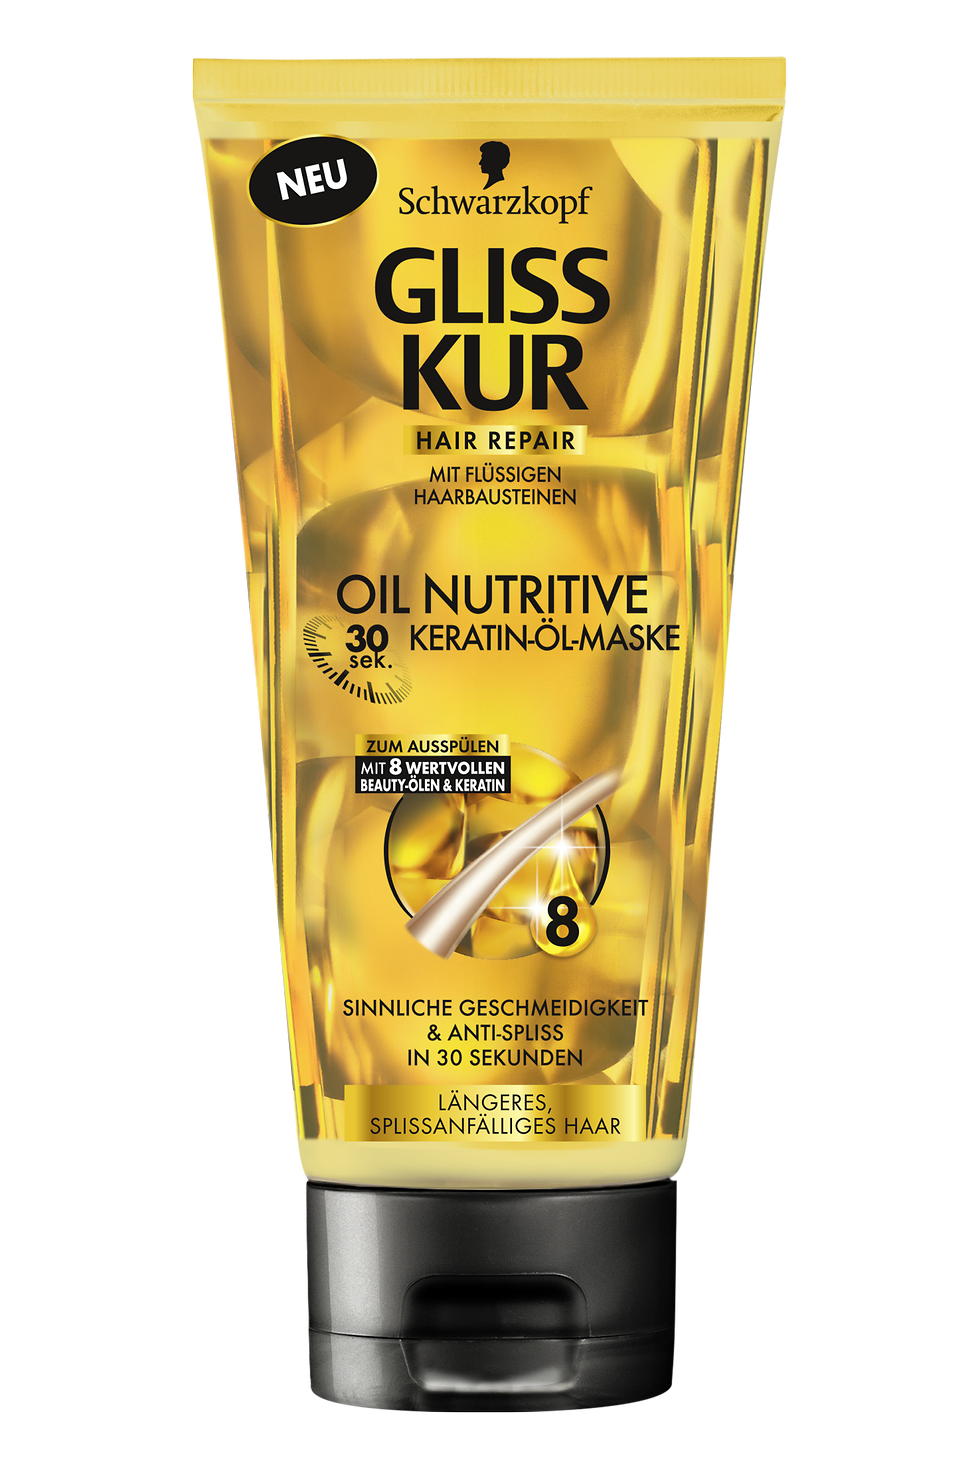 Gliss Kur Oil Nutritive 30s Keratin-Öl-Maske